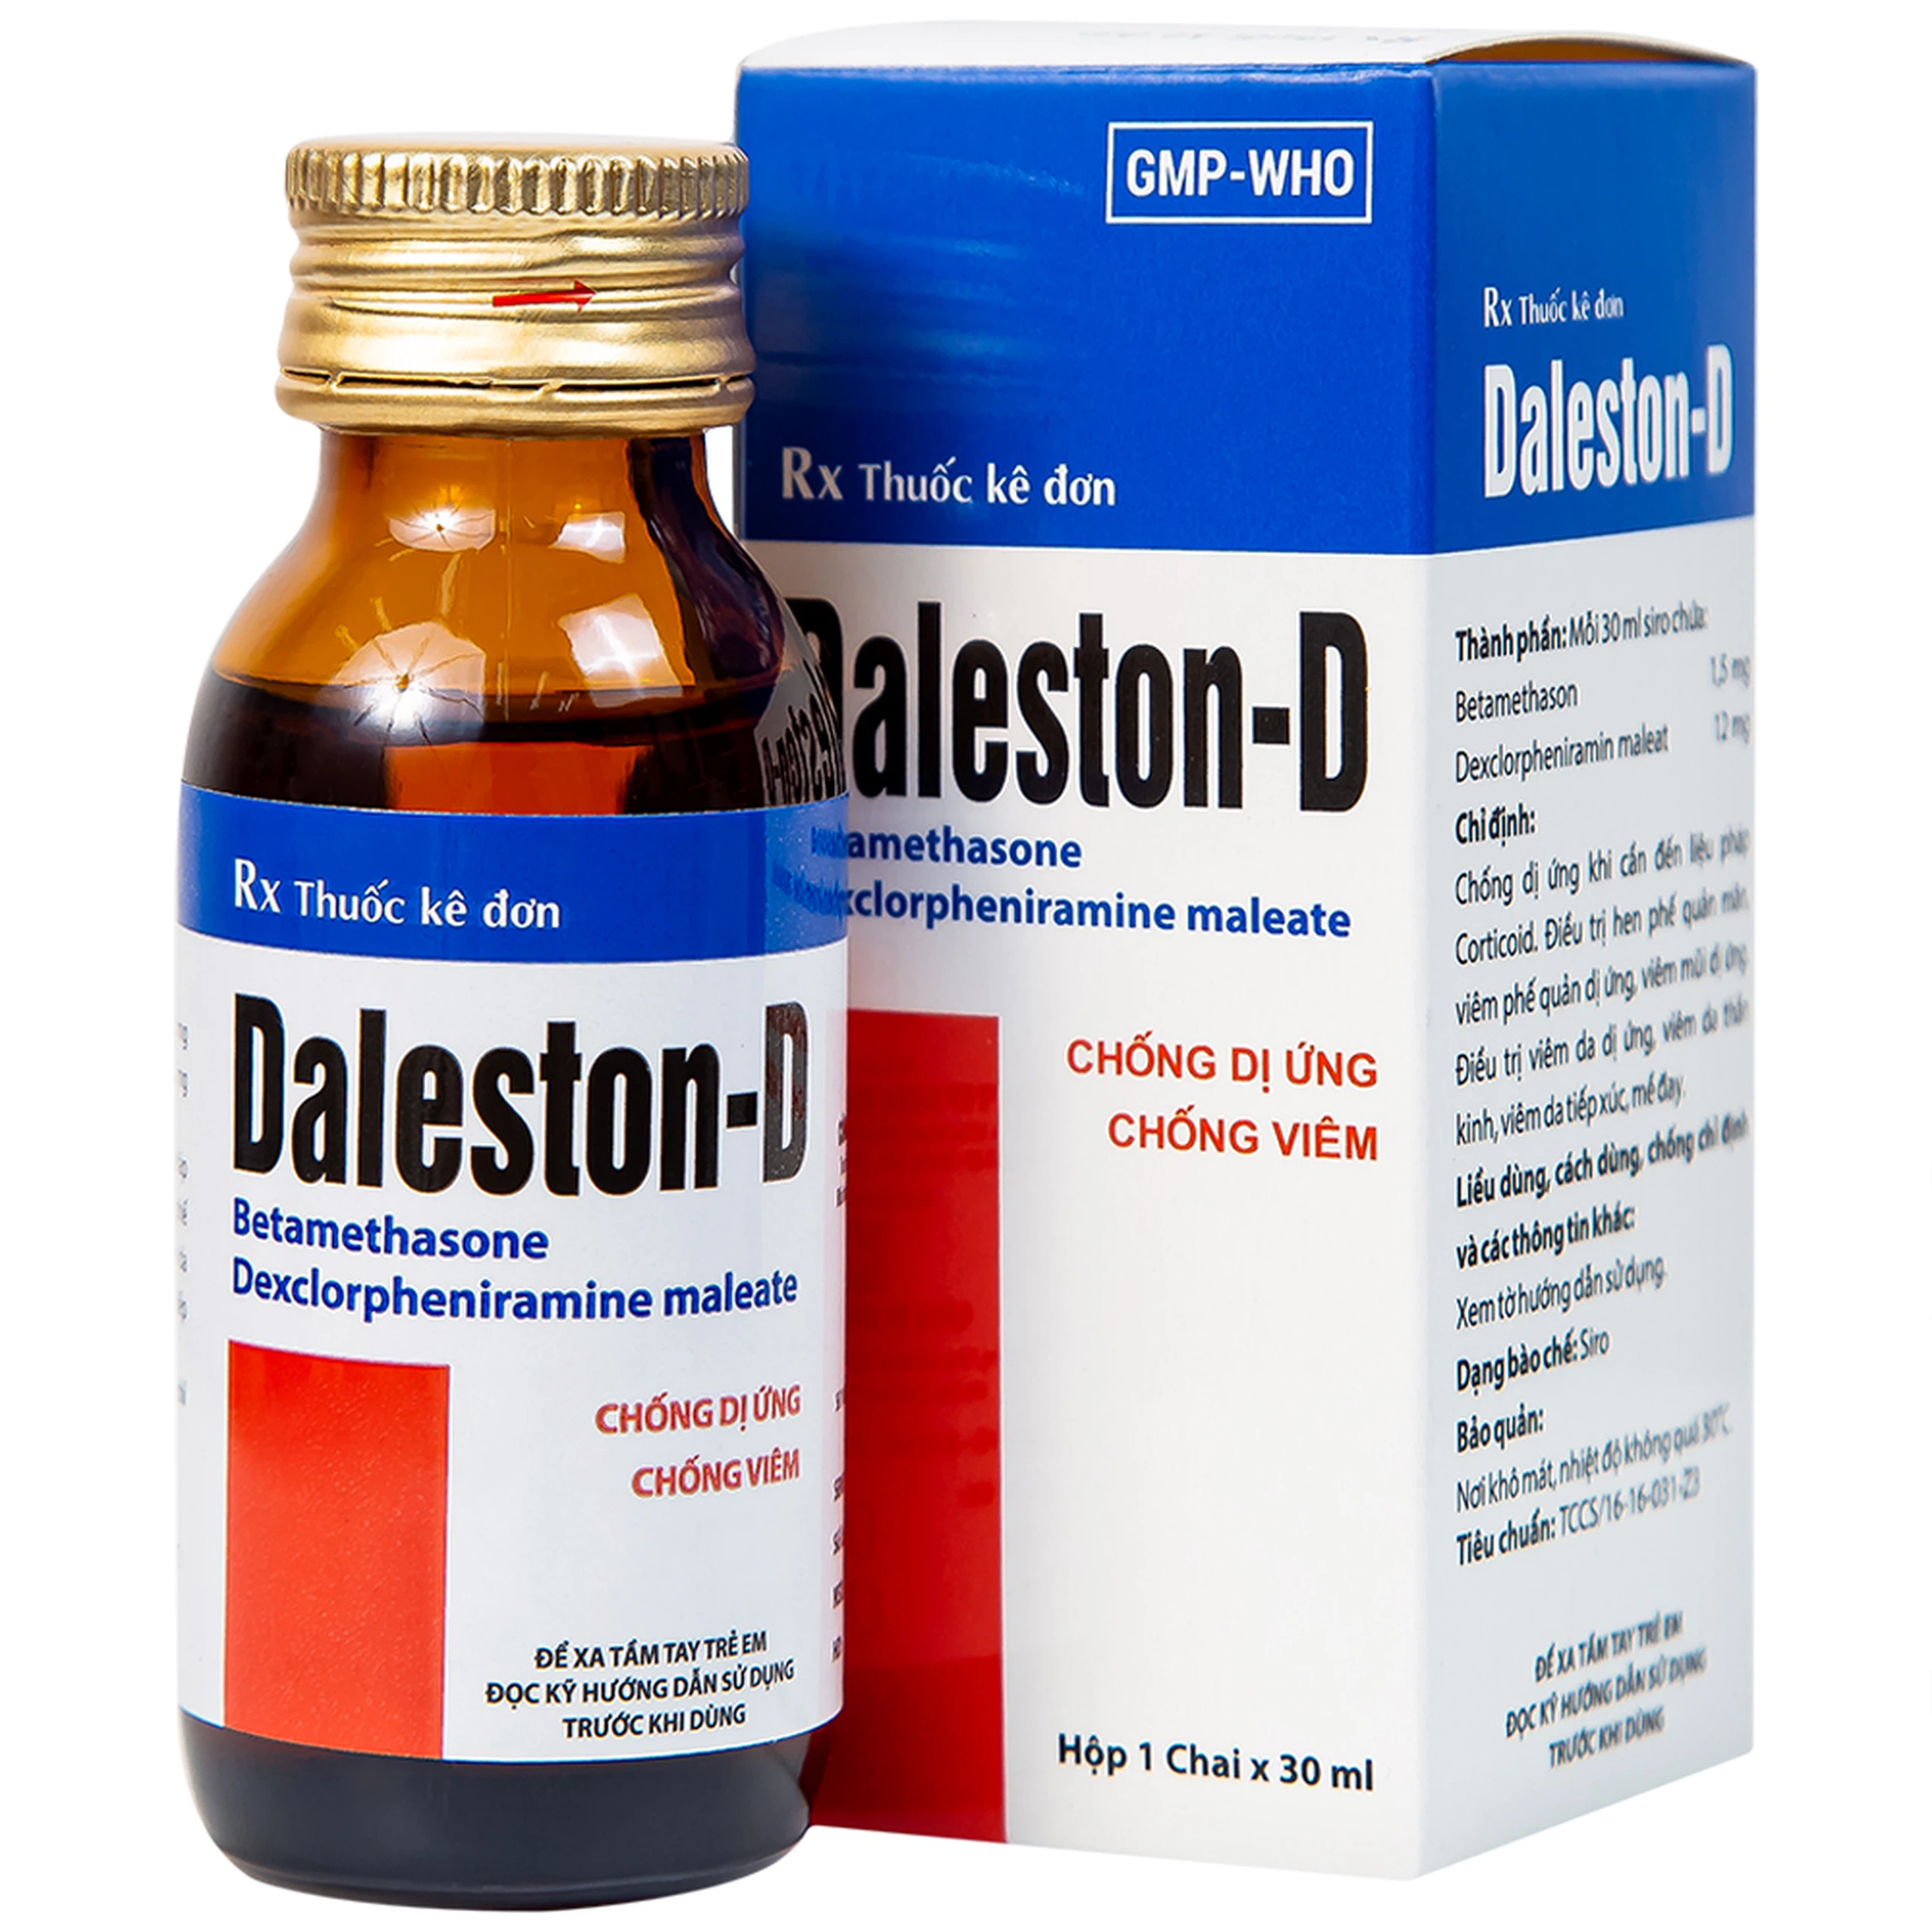 Siro Daleston-D TW3 chống dị ứng, chống viêm (30ml)